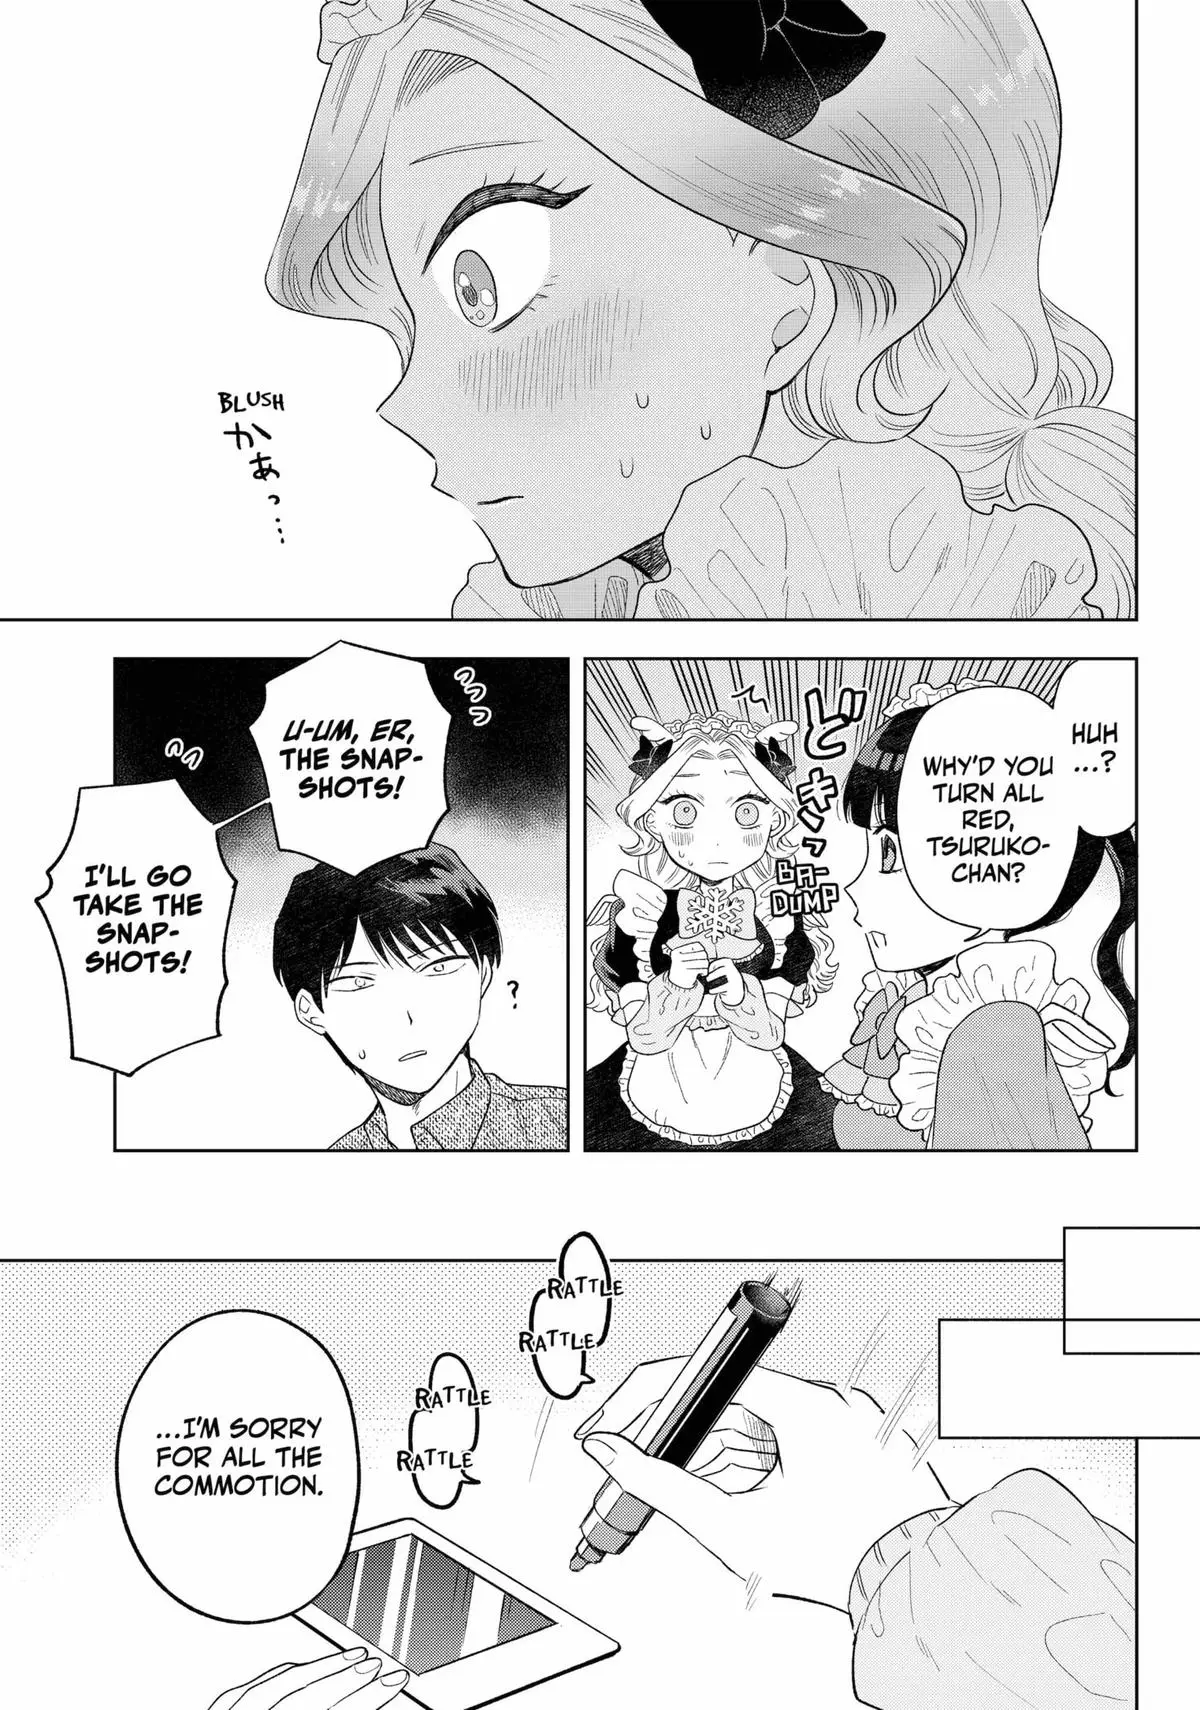 Tsuruko Returns The Favor - 12 page 11-ad0a1e43